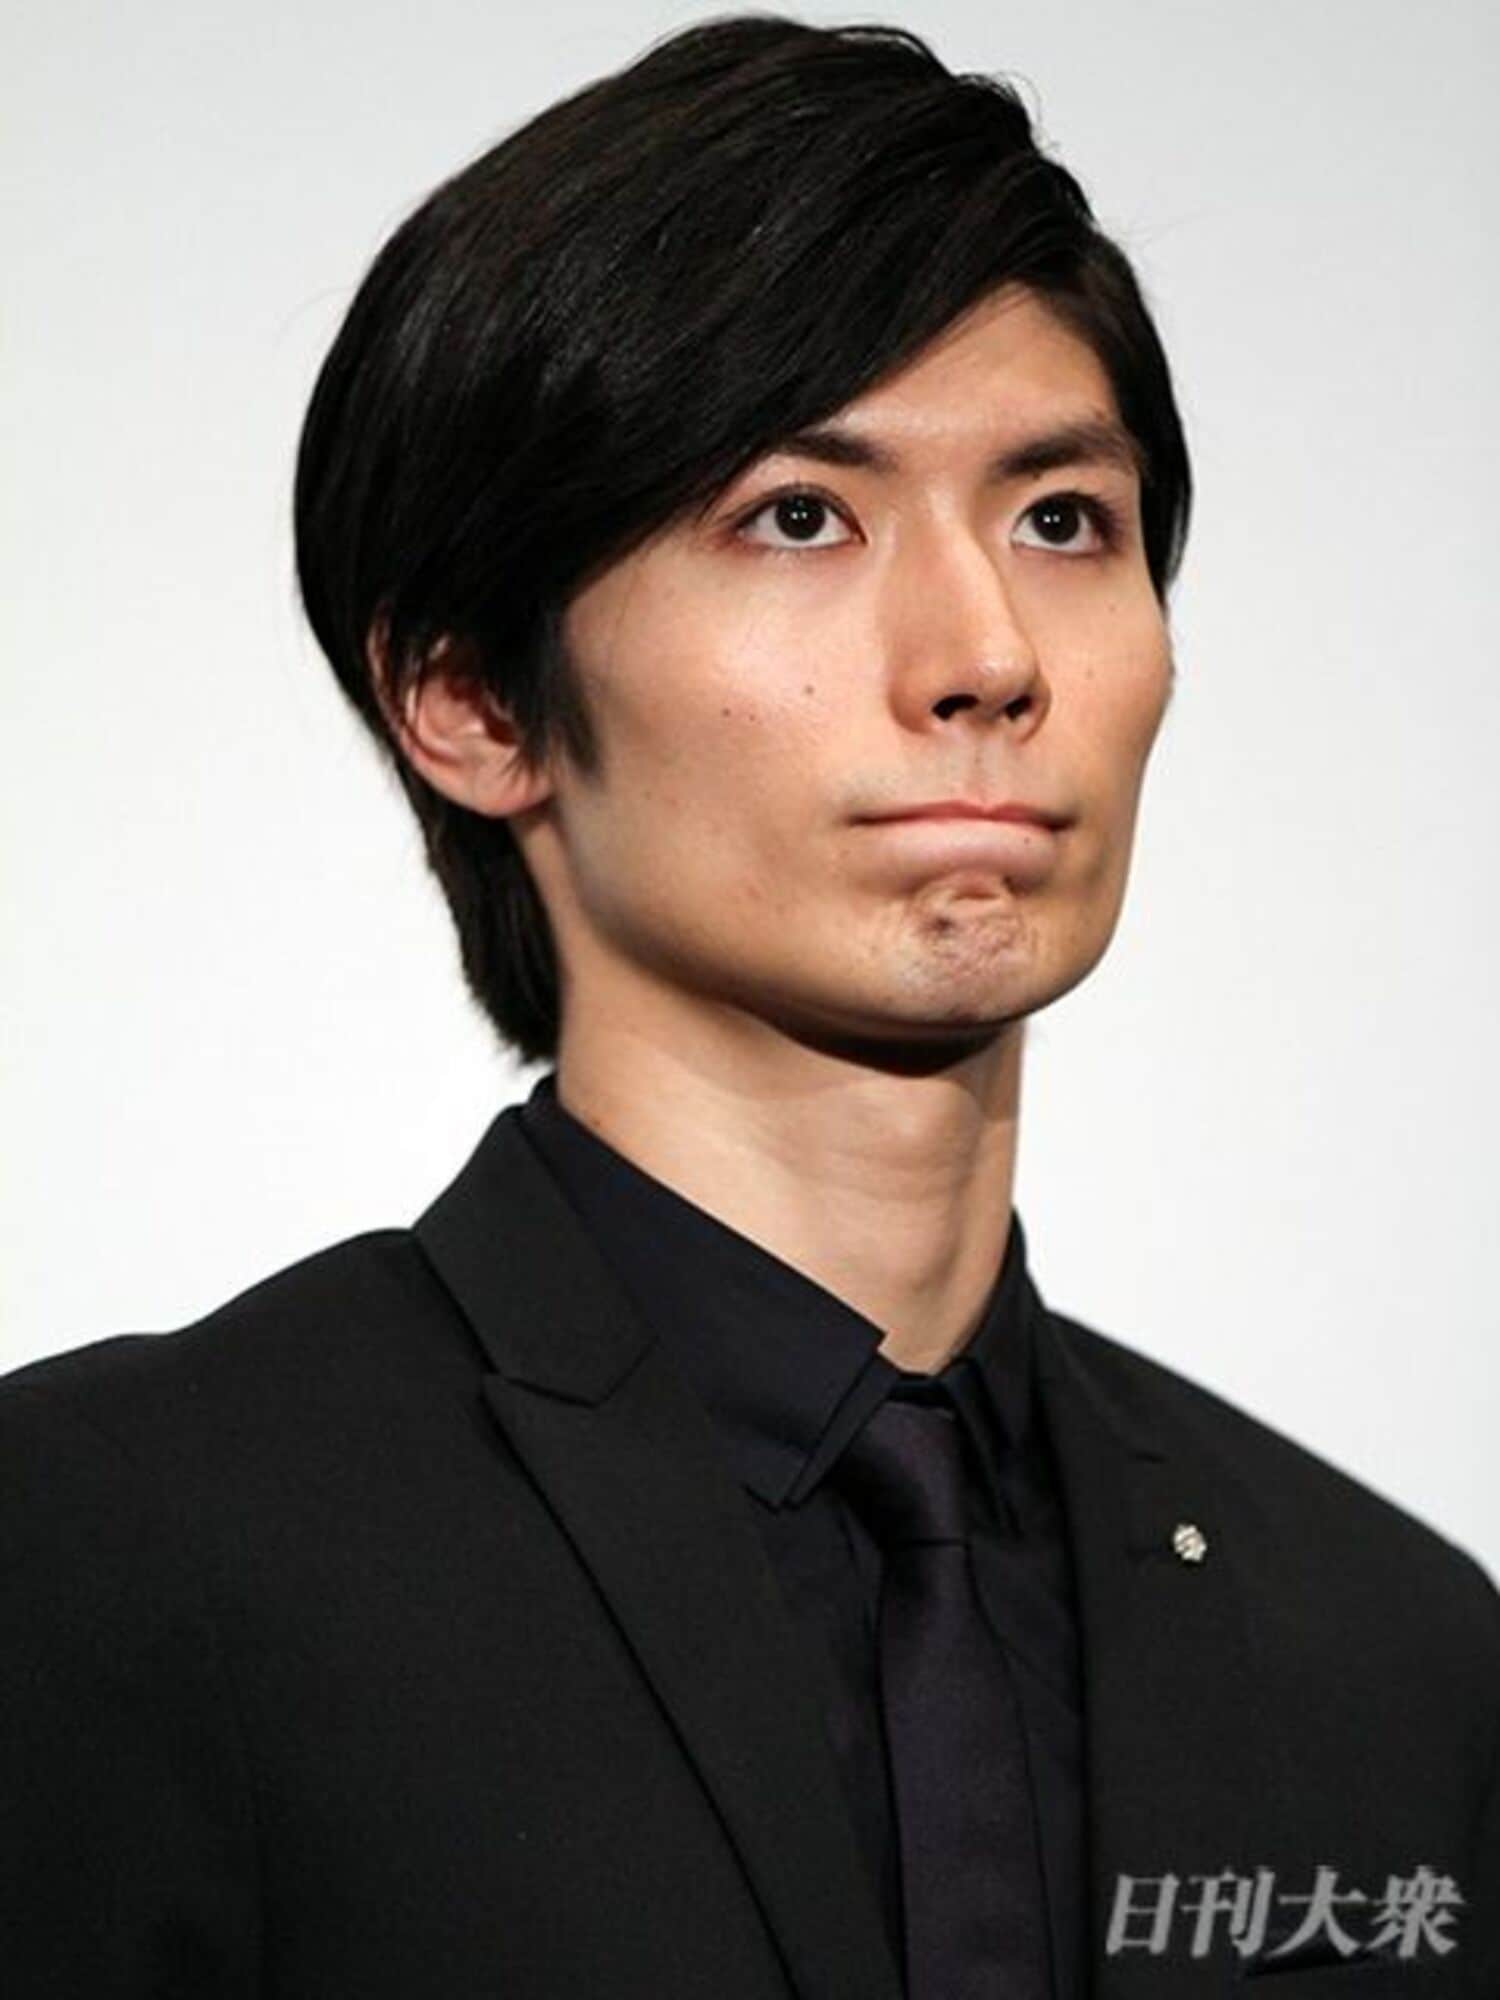 三浦春馬に加藤諒、子役から苦労を重ね成功した有名俳優の画像